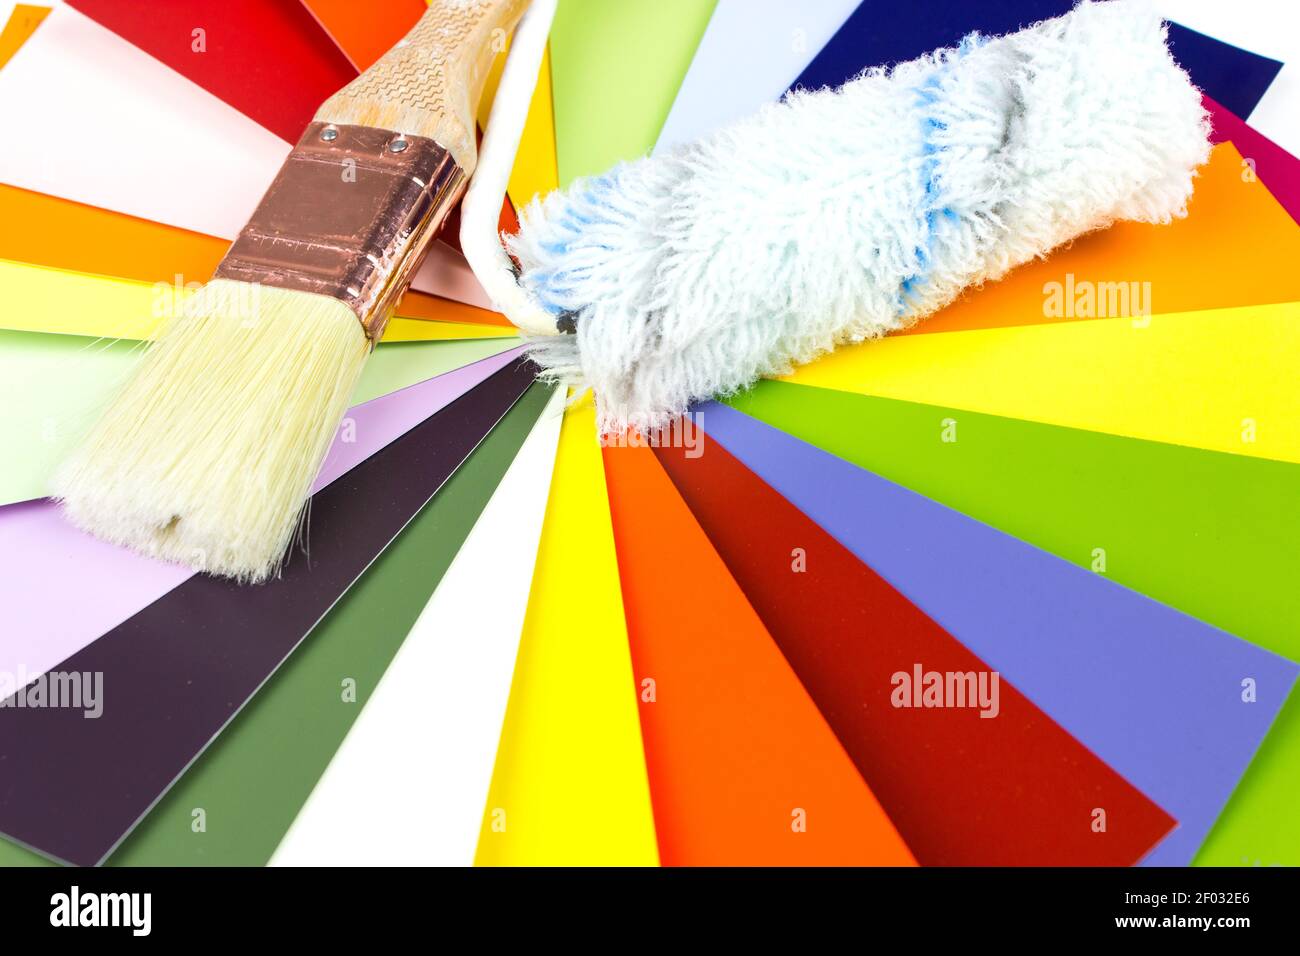 Palette de cartes de couleurs avec pinceau et rouleau, échantillons pour la définition des couleurs Banque D'Images